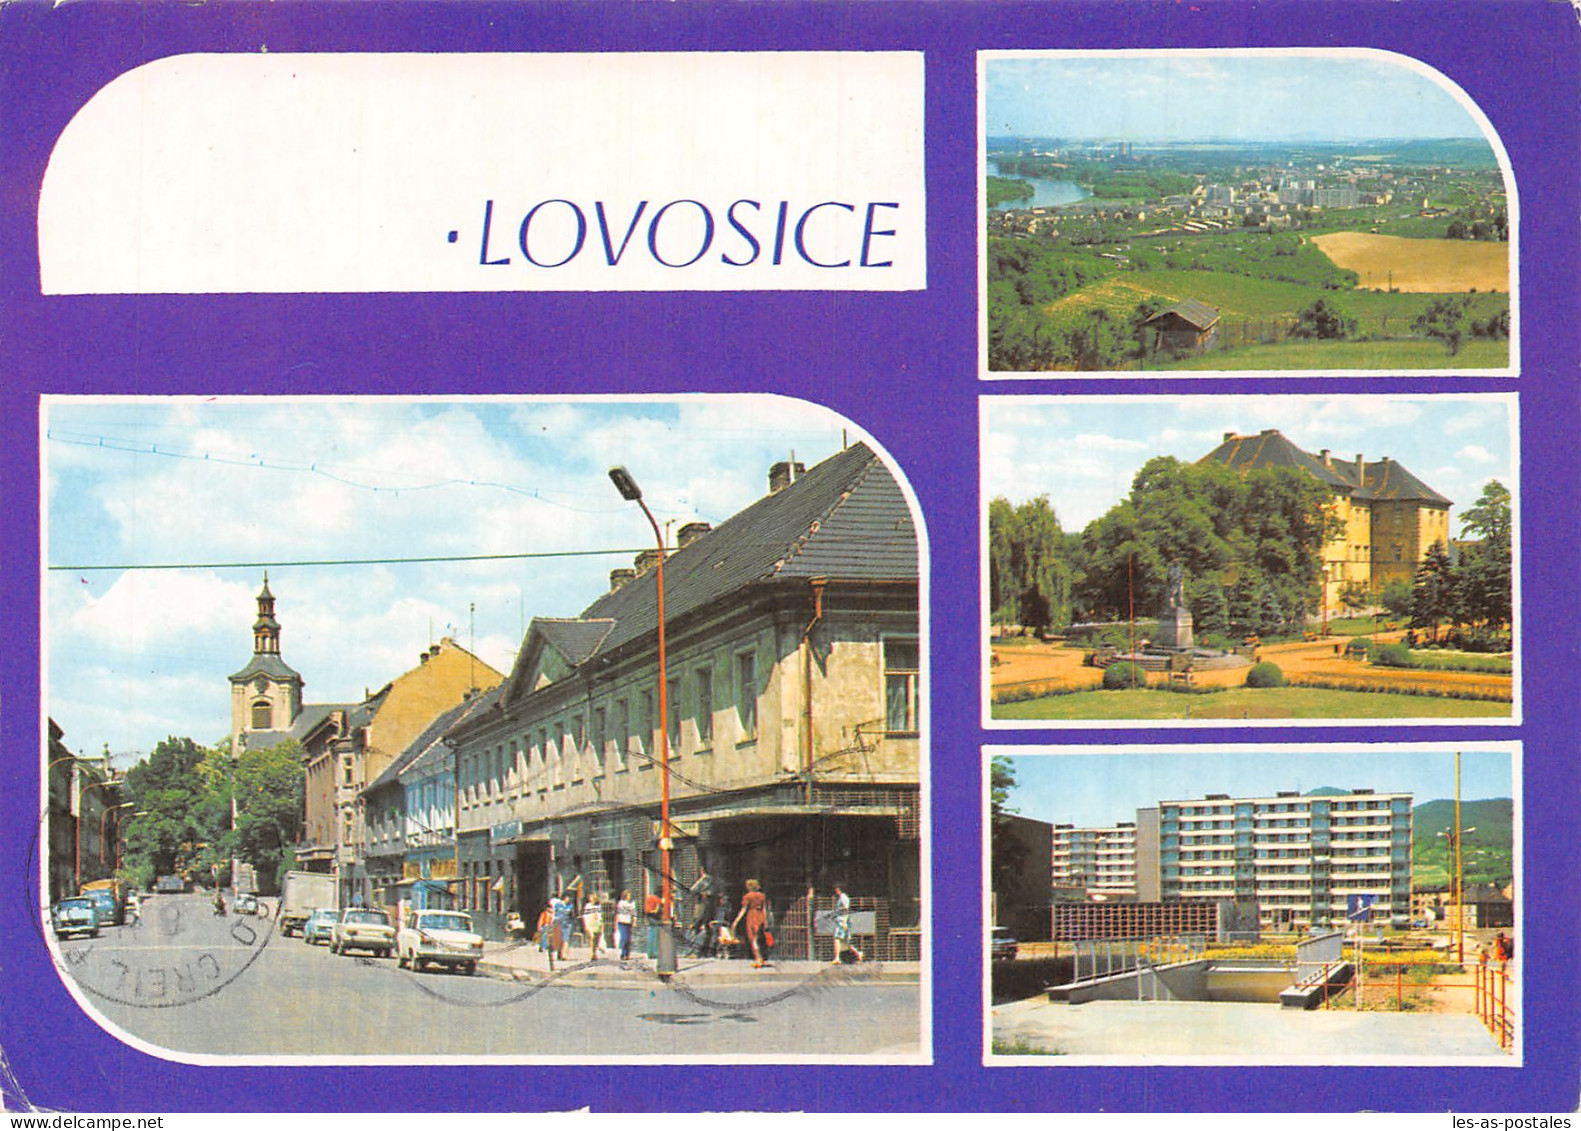 YOUGOSLAVIE CESKOSLOVENSKO LOVOSICE - Yugoslavia